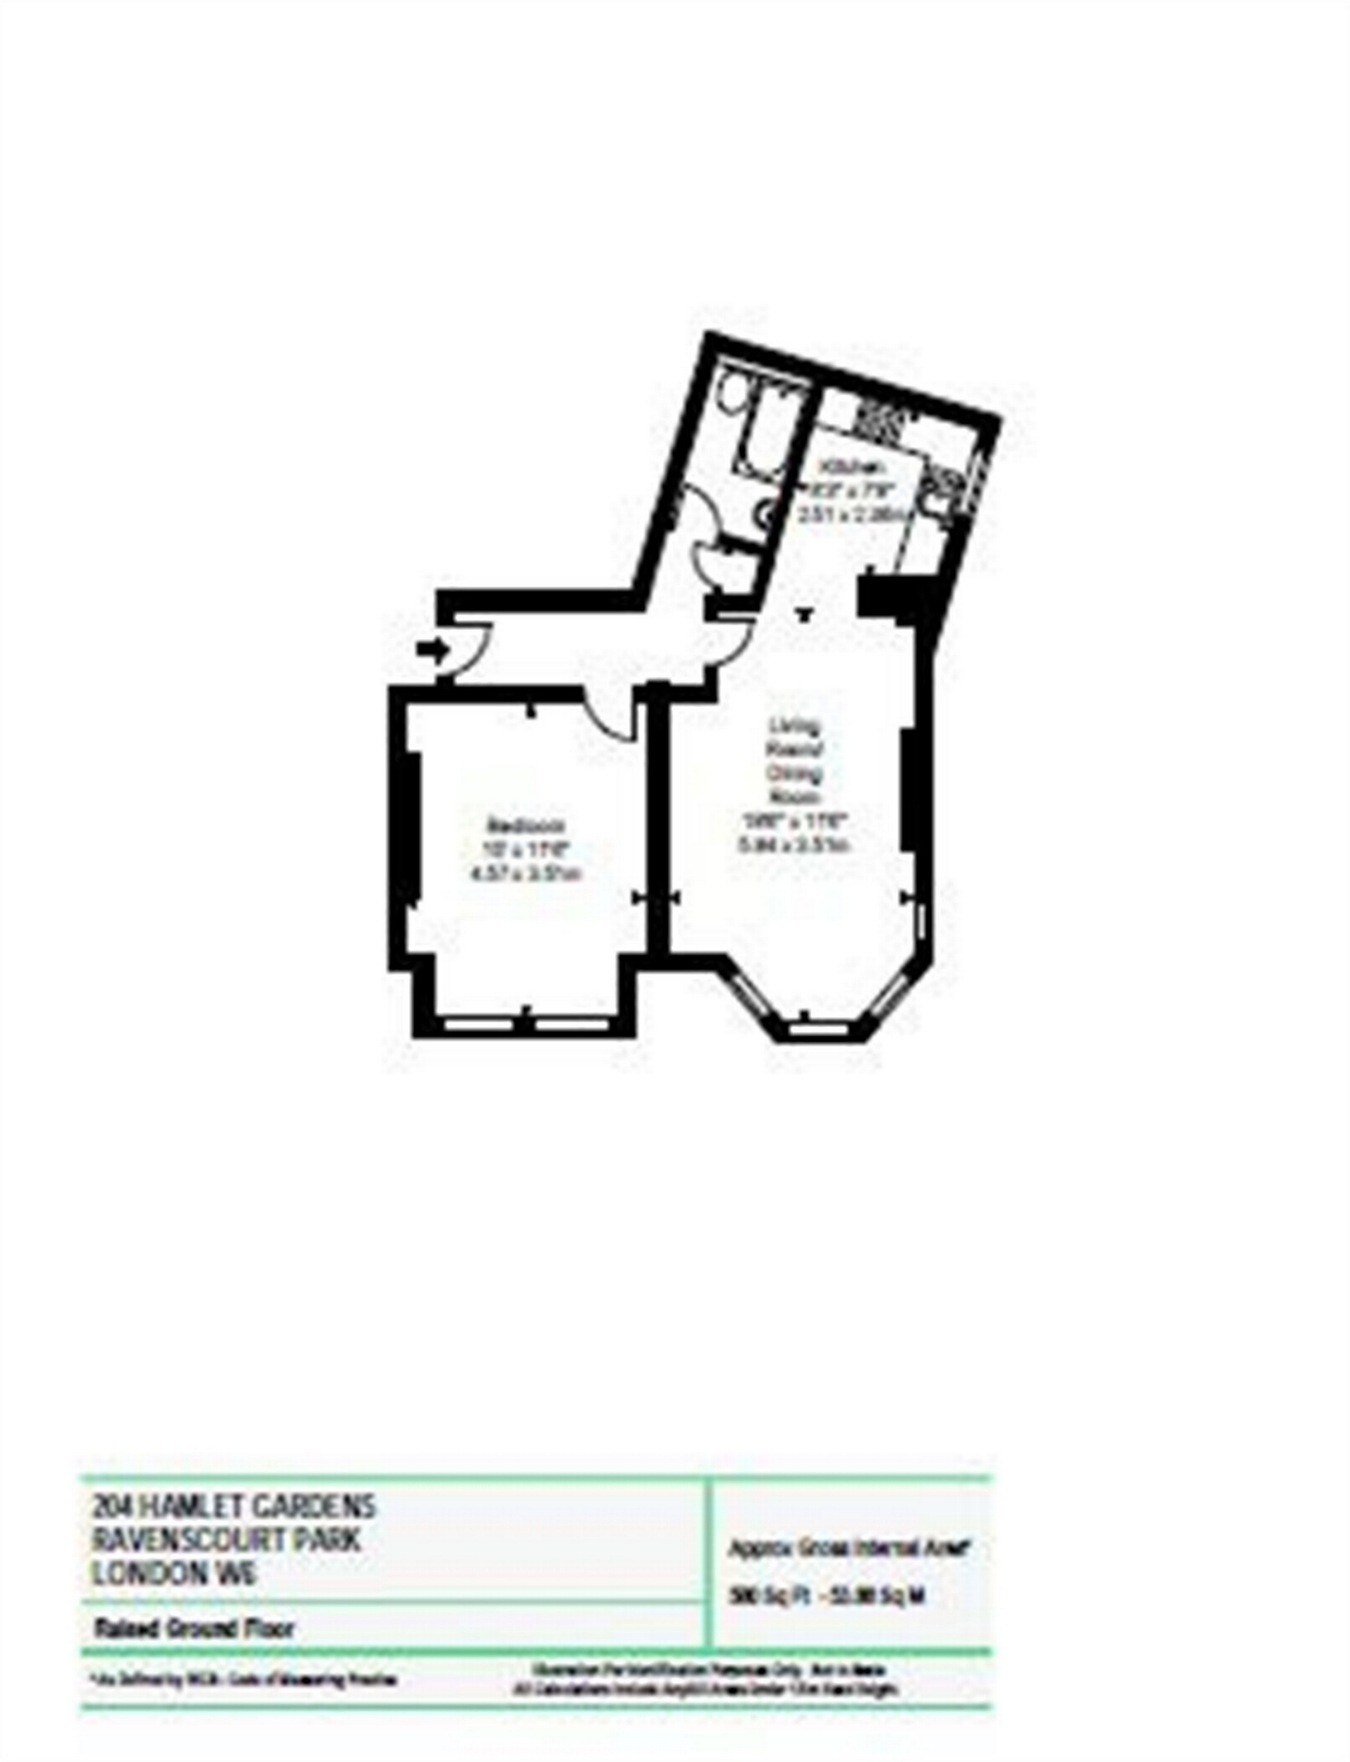 1 Bedrooms Flat to rent in Hamlet Gardens, London W6